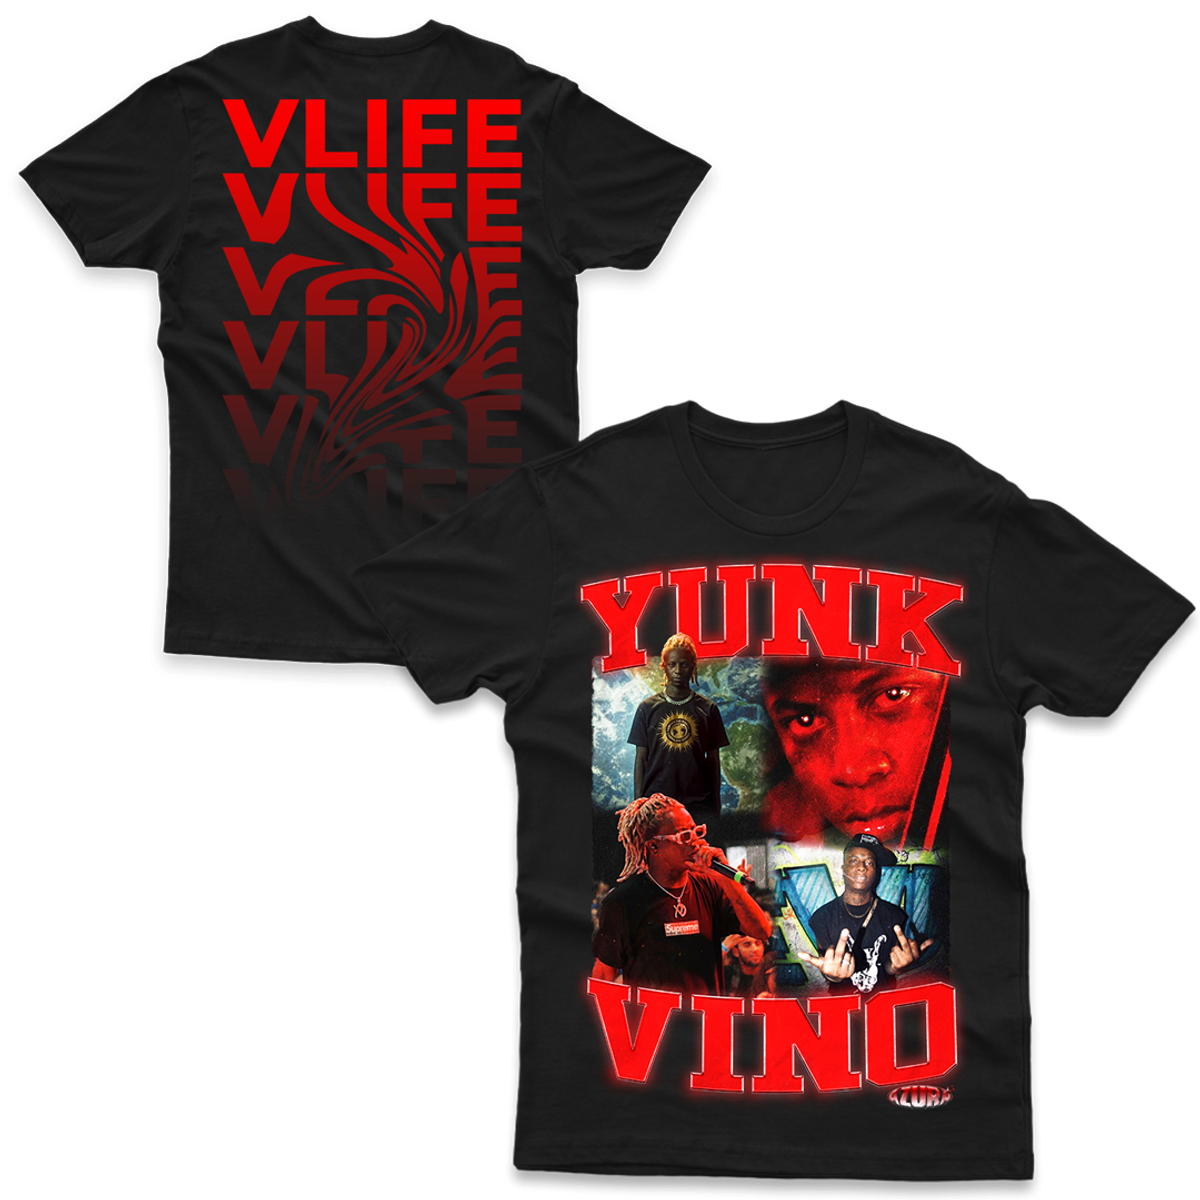 Nome do produto: Yunk Vino - VLIFE